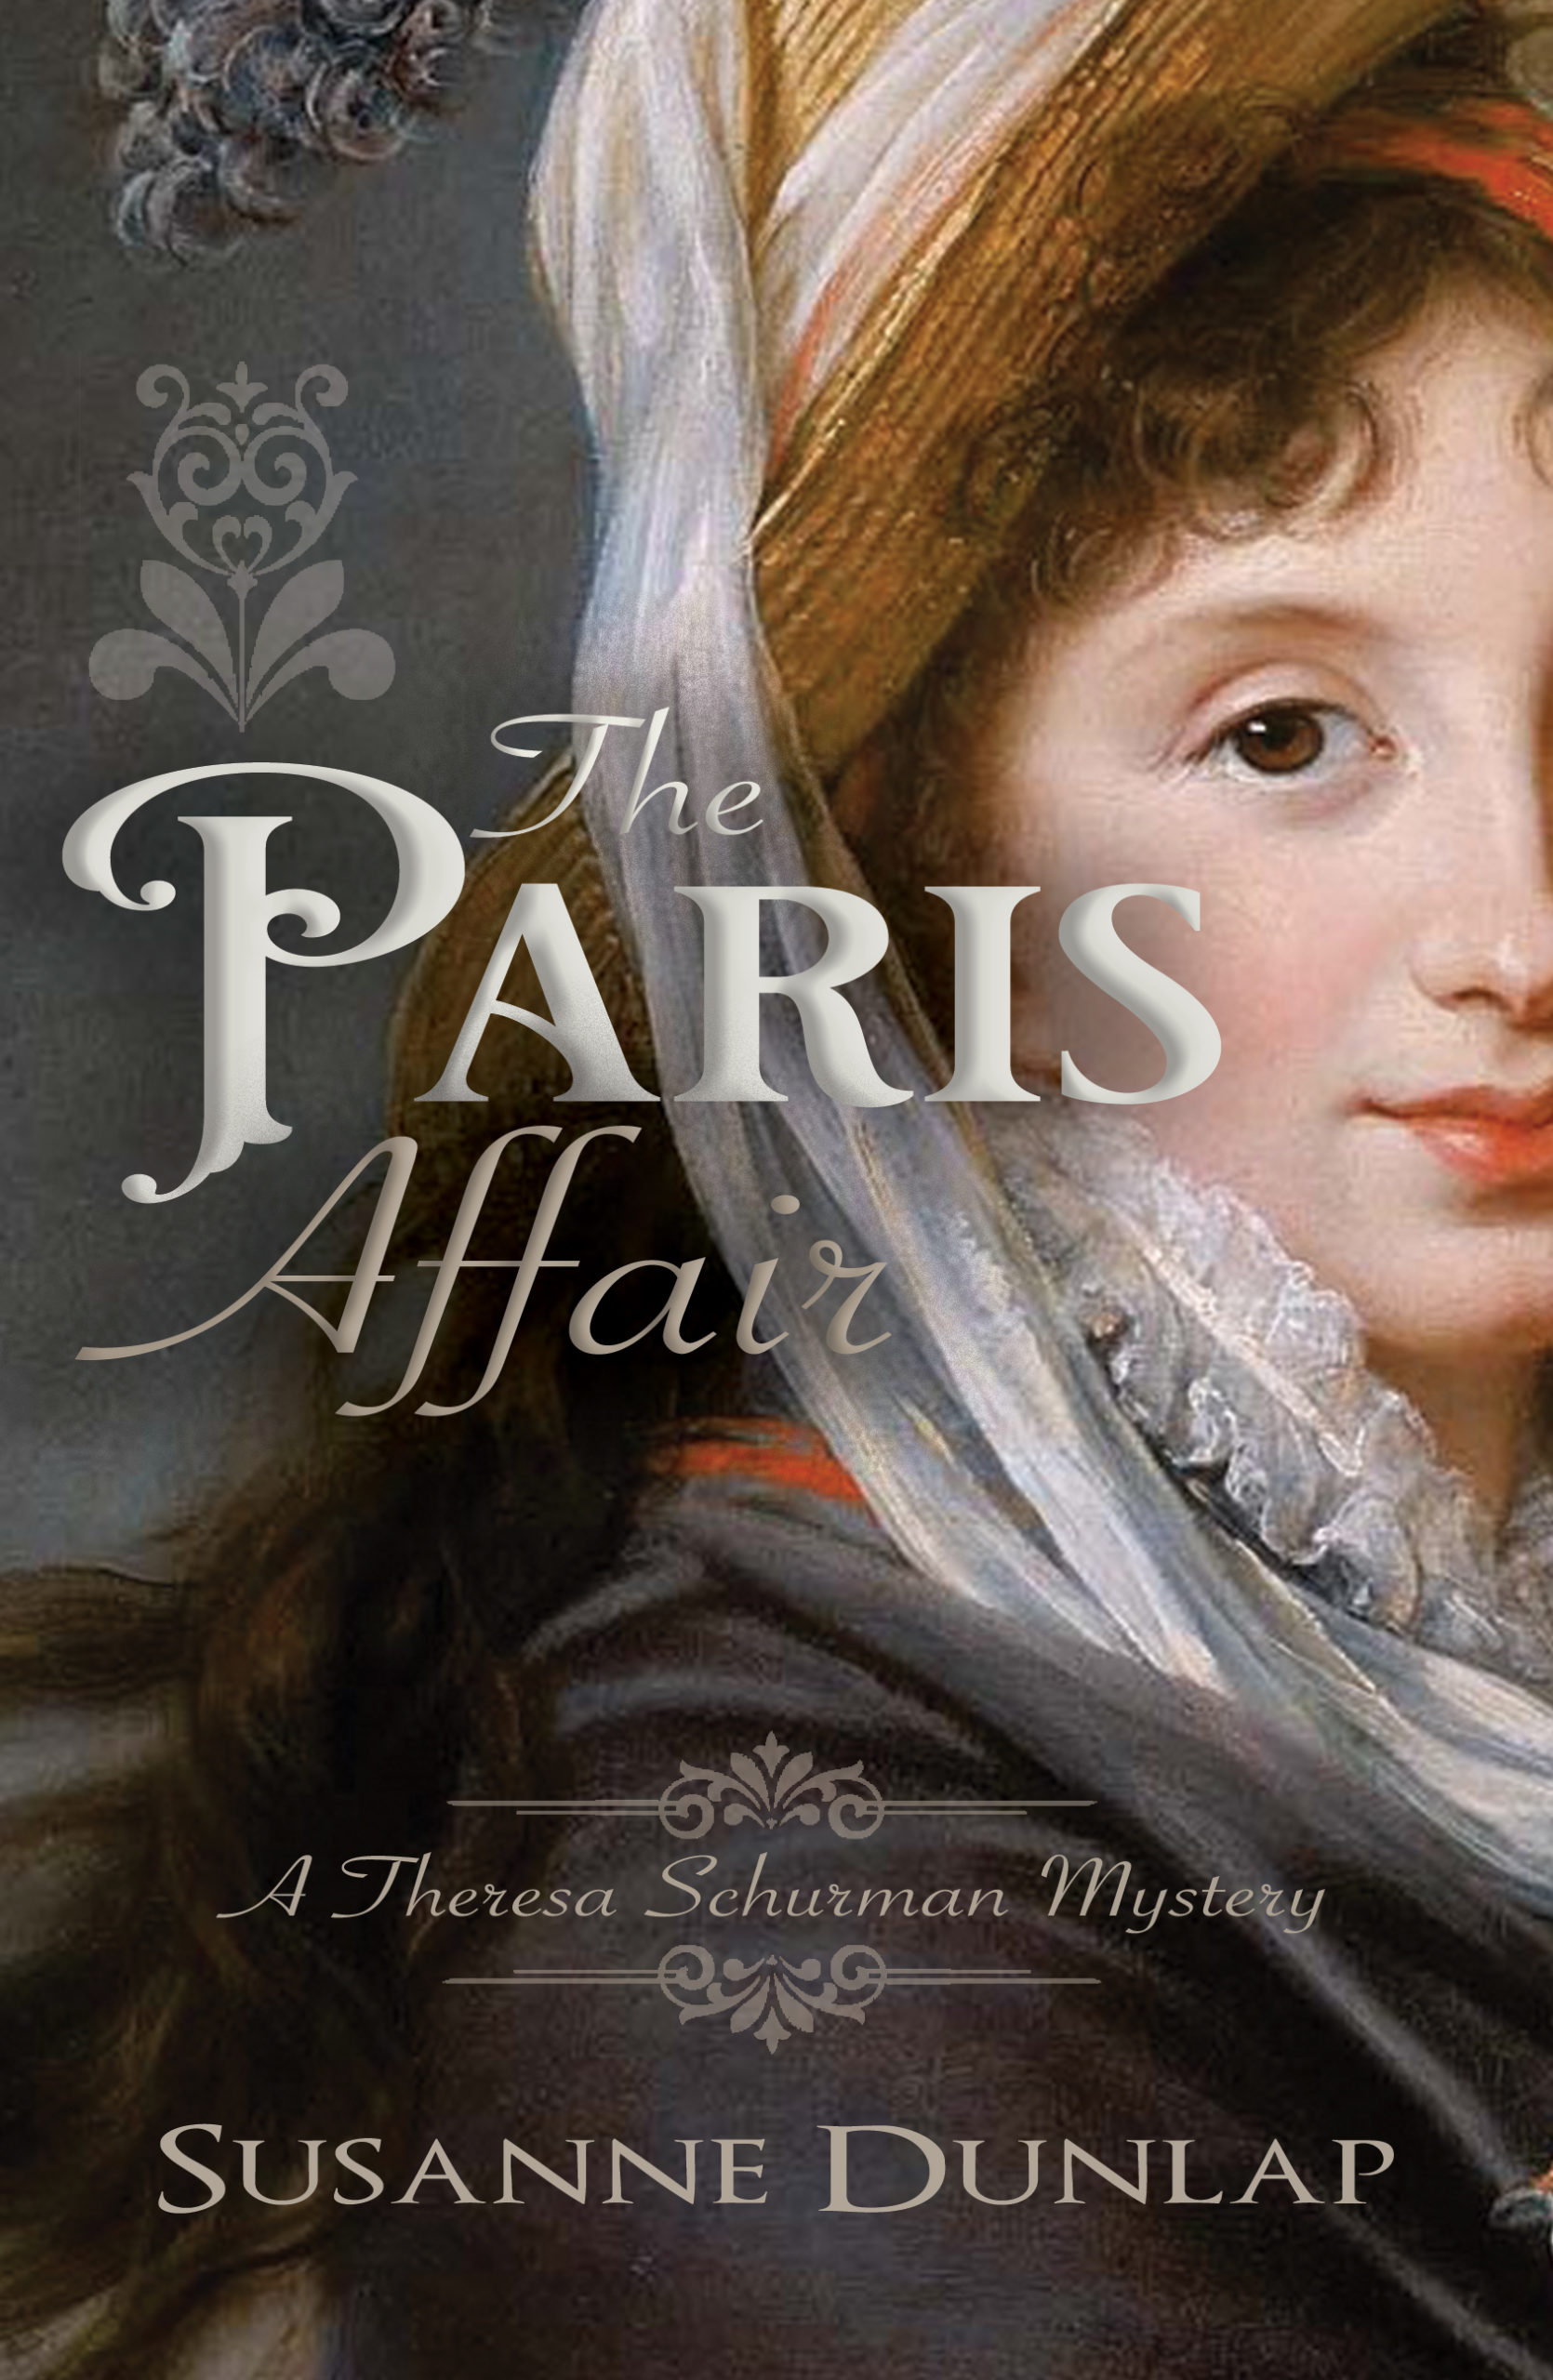 Publication Day for THE PARIS AFFAIR!